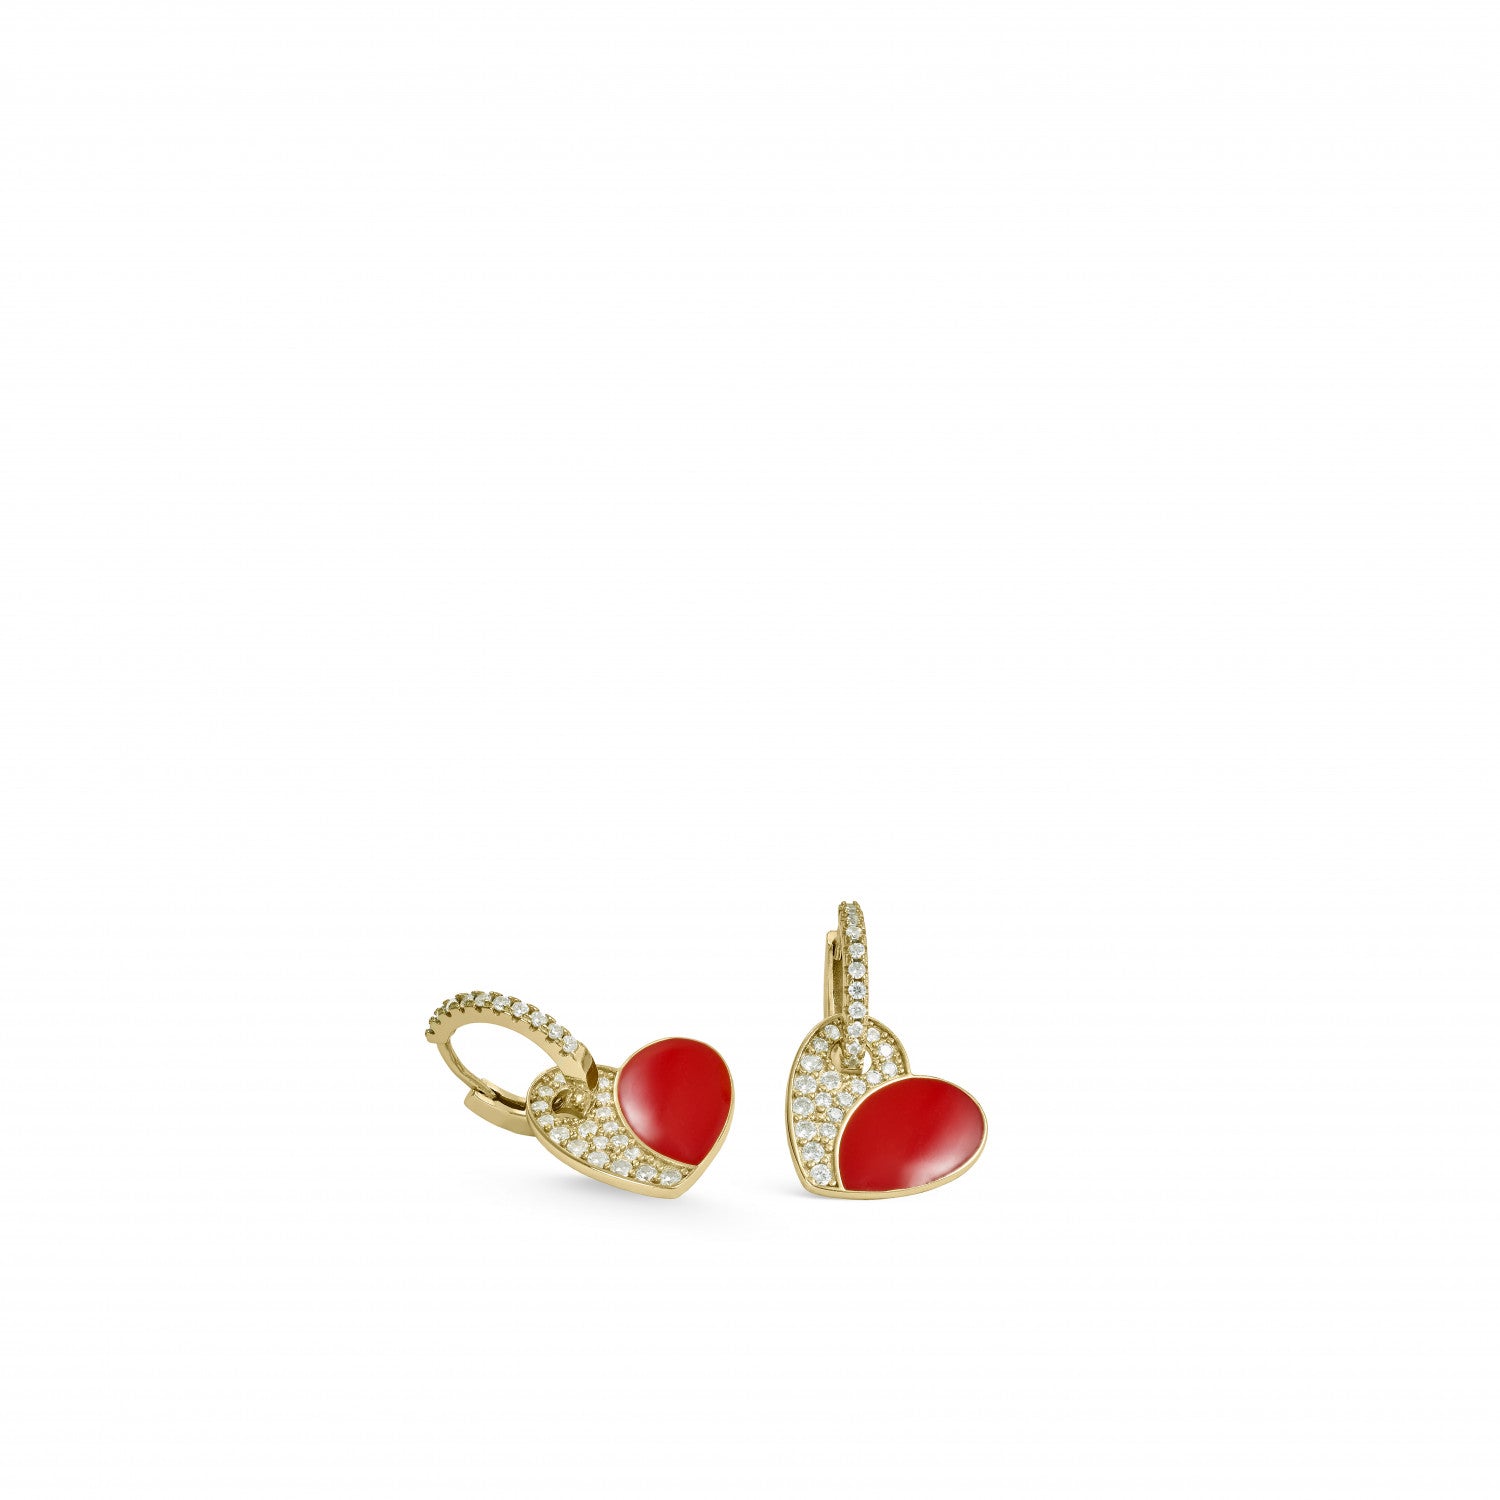 Earrings - Red enamel heart design pendant earrings